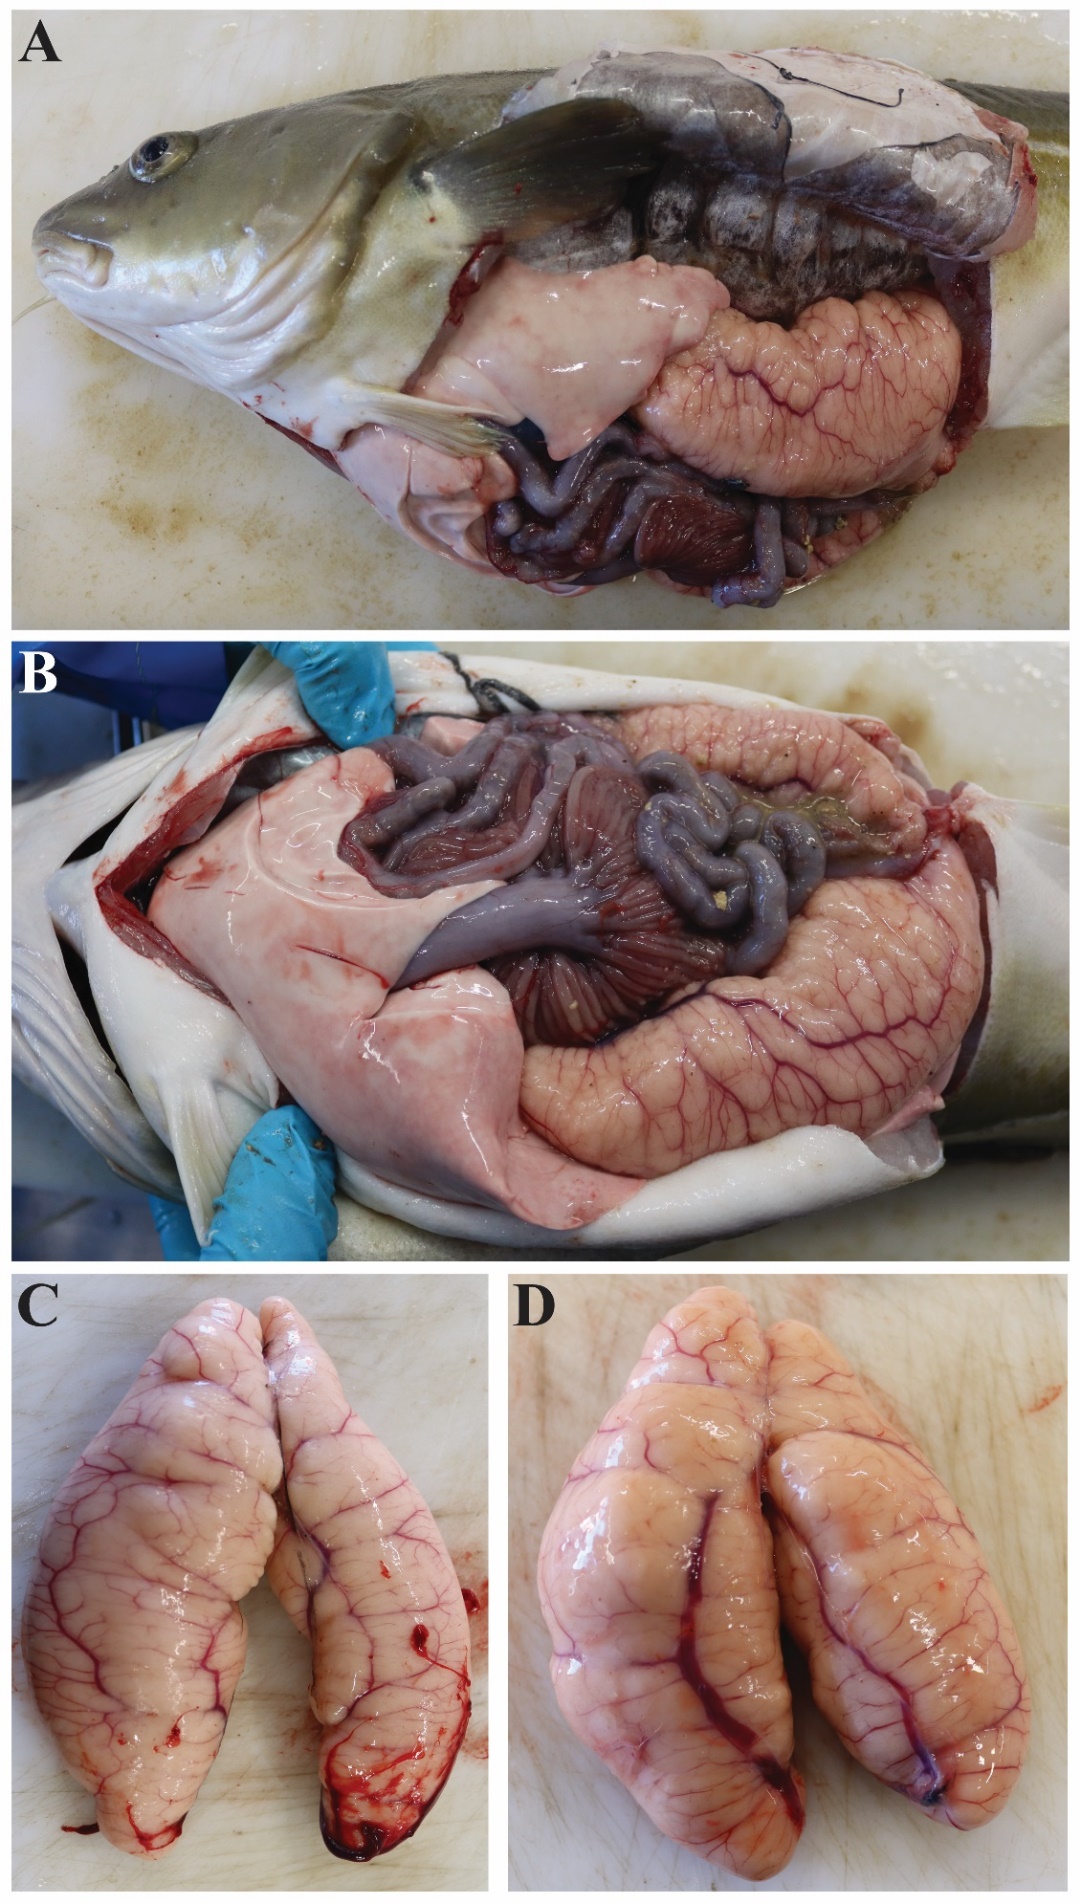 Figuren viser to fotografier av en hunntorsk åpnet ventralt og på siden, slik at man kan se organene i bukhulen, spesielt eggstokken som tar opp halvparten til 2/3 av plassen i bukhulen. To andre bilder viser samme eggstokk med forskjellige forstørrelser. Vaskularisering (blodkar) er fremtredende.